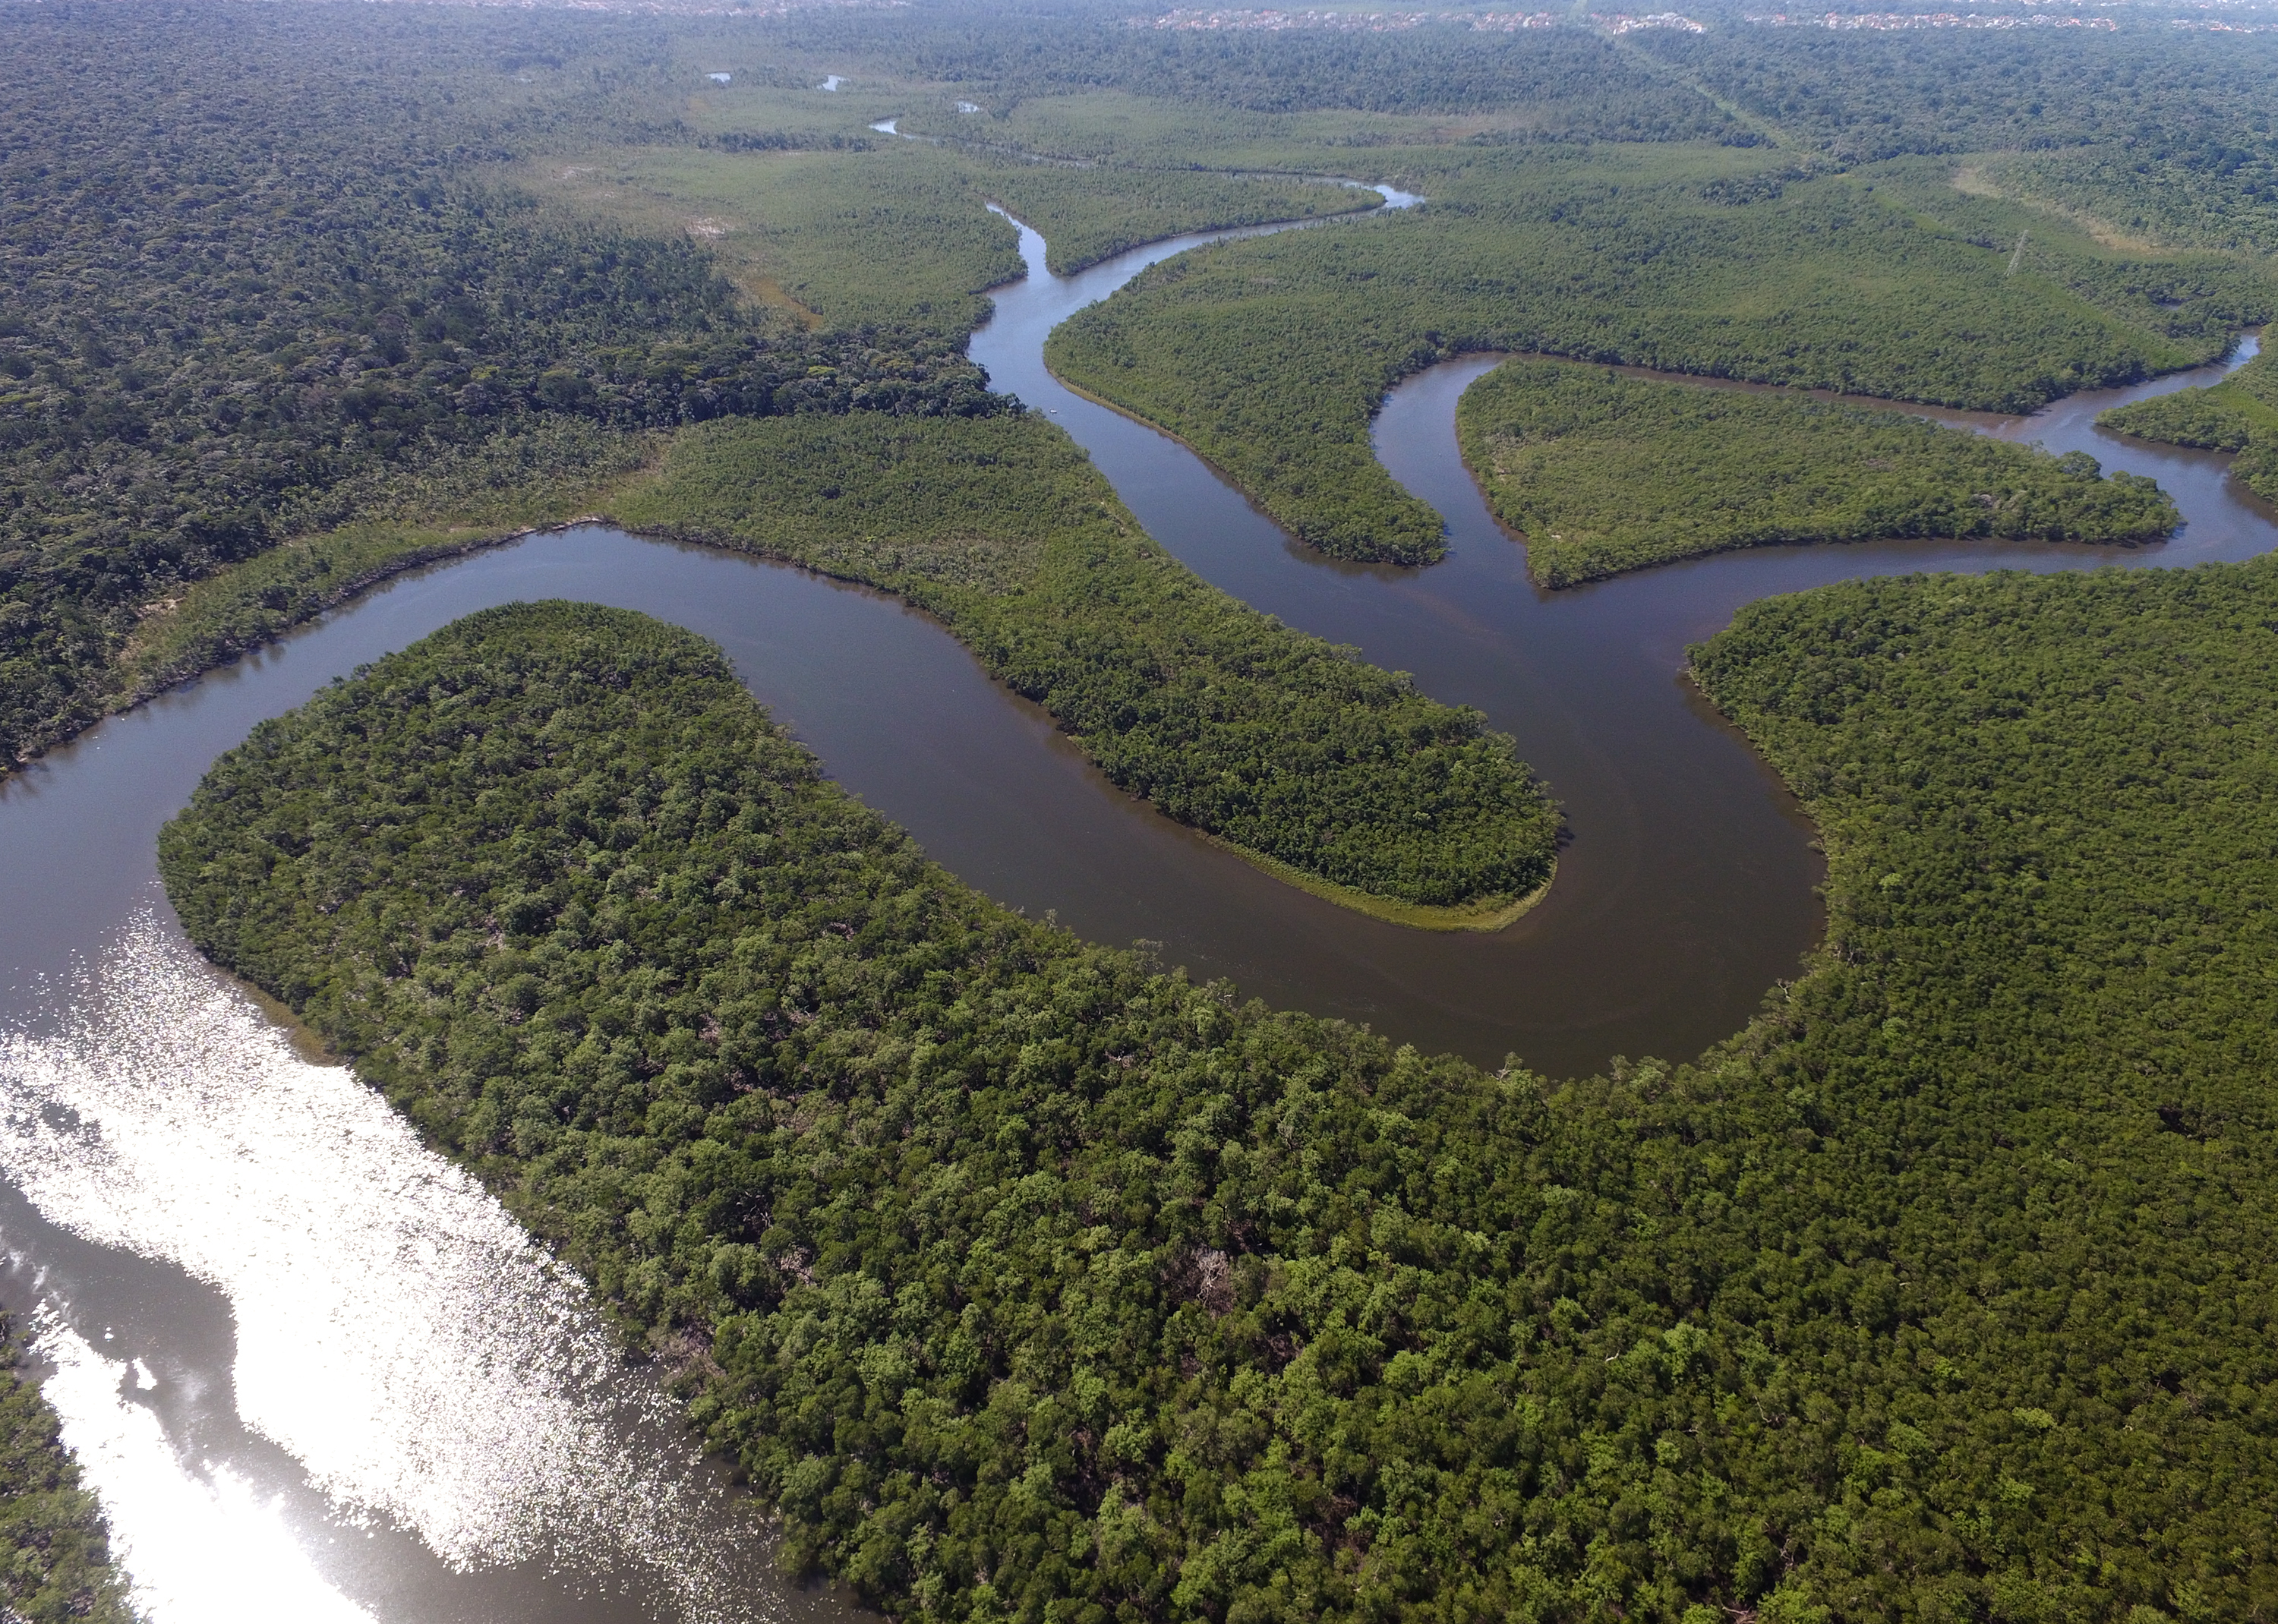 Амазонка полноводна круглый год. Река Амазонка в Бразилии. Южная Америка река Амазонка. Устье реки Амазонка. Амазонская низменность.